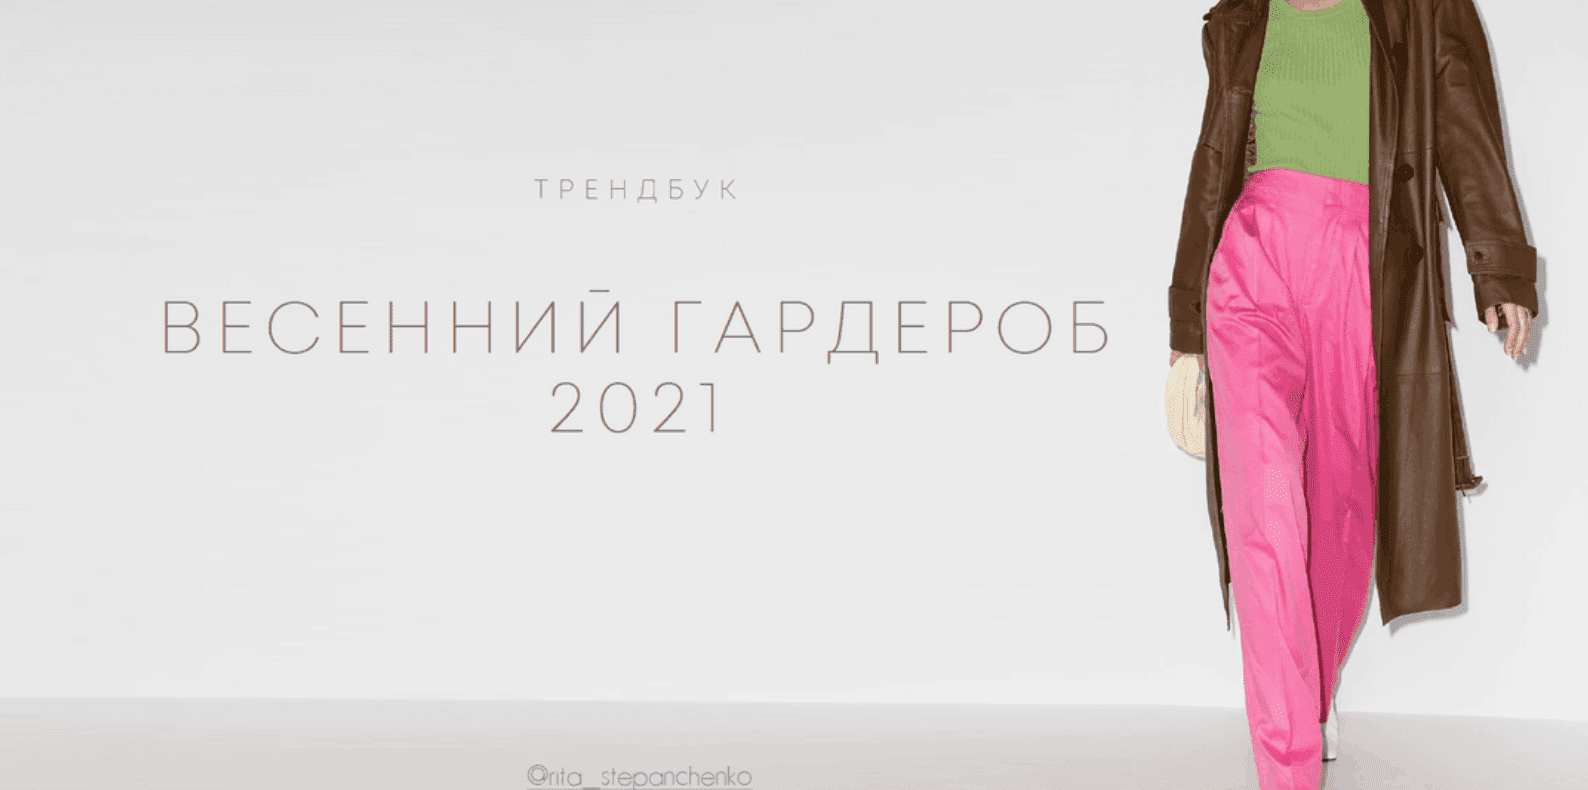 Изображение [Маргарита Степанченко] Весенний гардероб 2021 в посте 208022